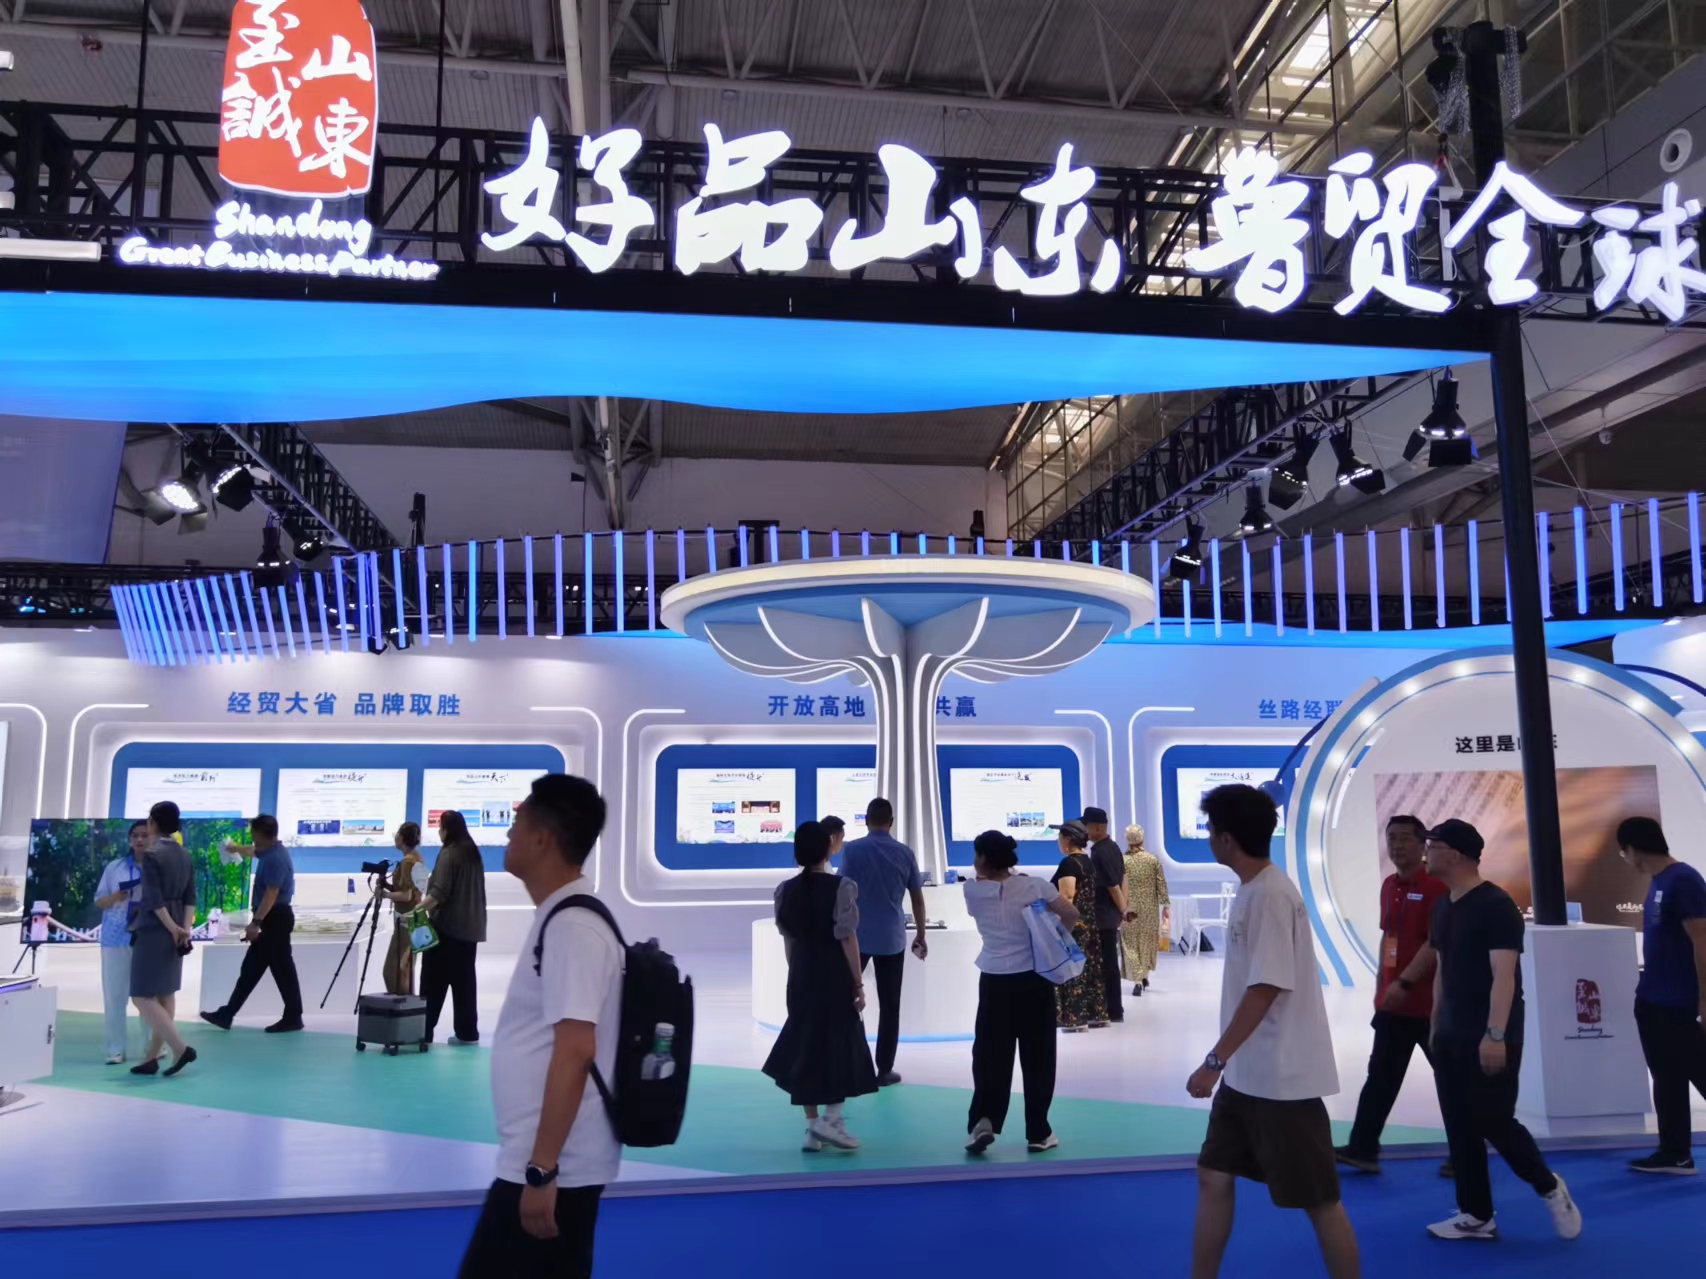 山東省以「好品山東 魯貿全球」為主題亮相第八屆中國一亞歐博覽會